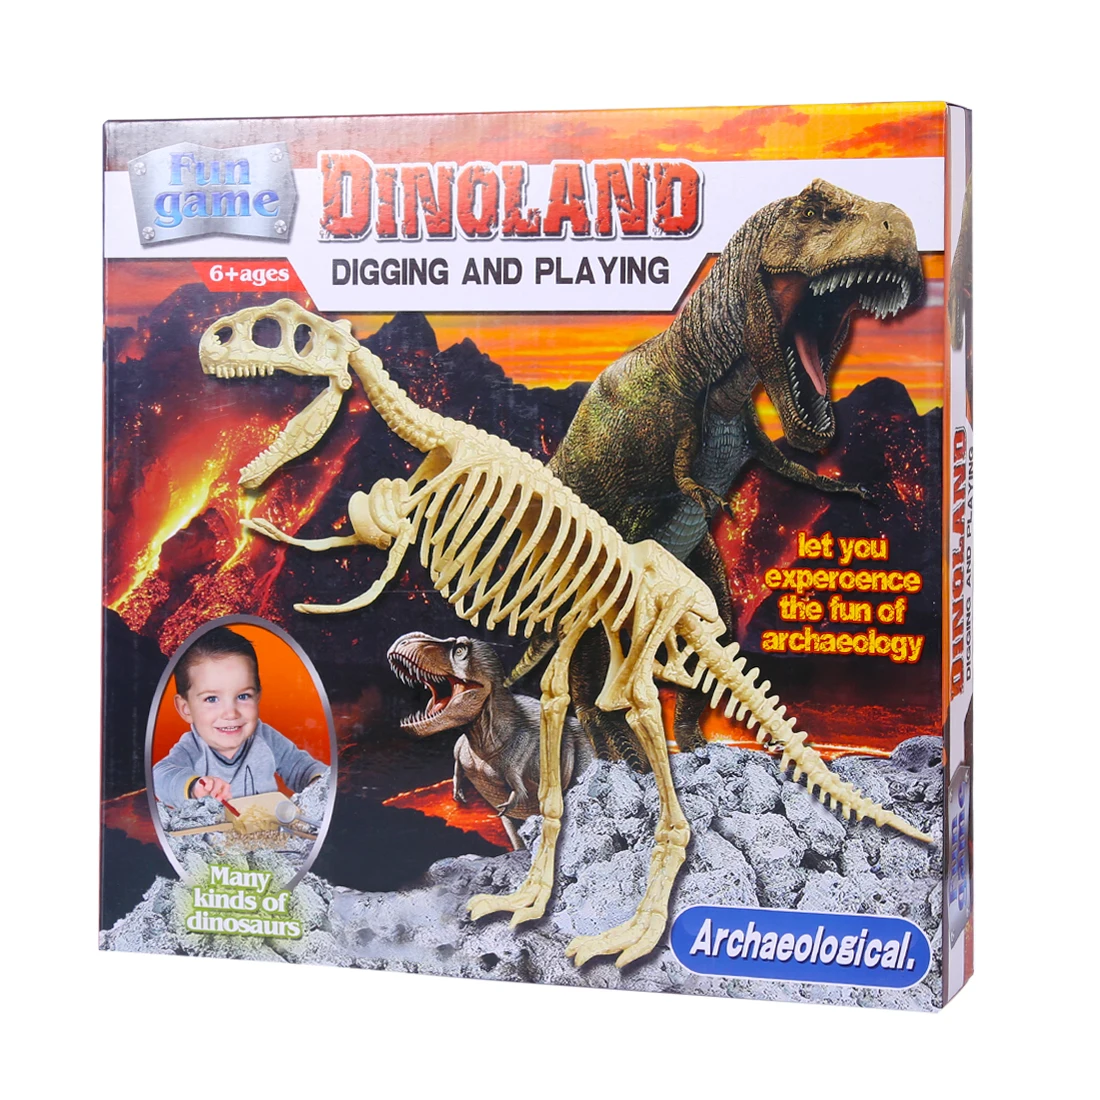 Тираннозаврами; издание дети сборки динозавров археологии земляных работ с мячом Развивающие игрушки для детей